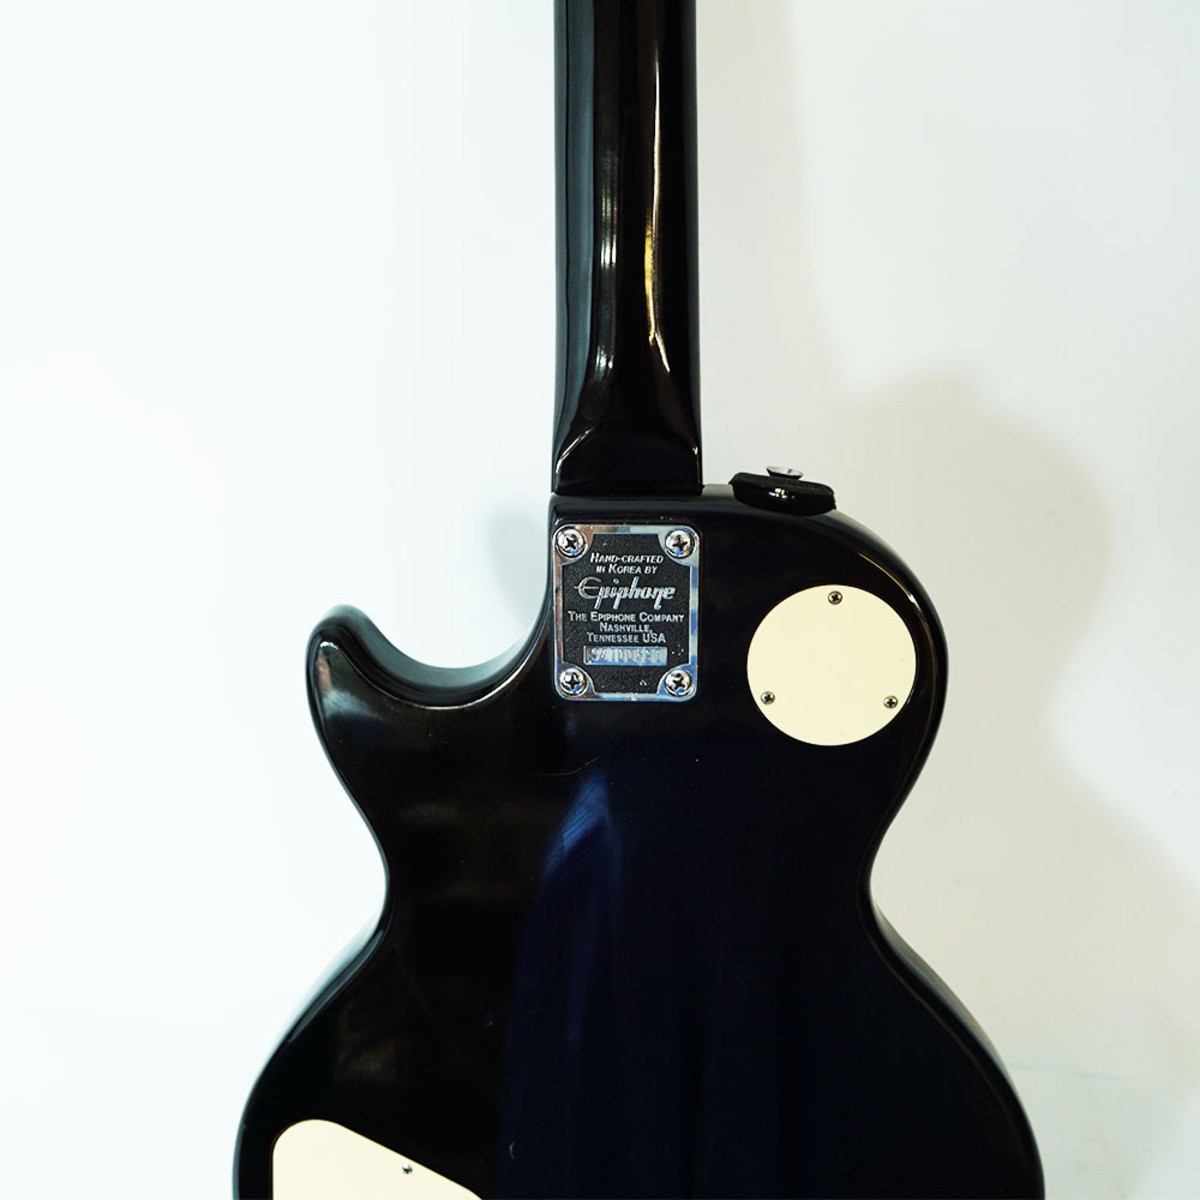 Comprar Guitarra Epiphone Gibson koreana de segunda mano E351459